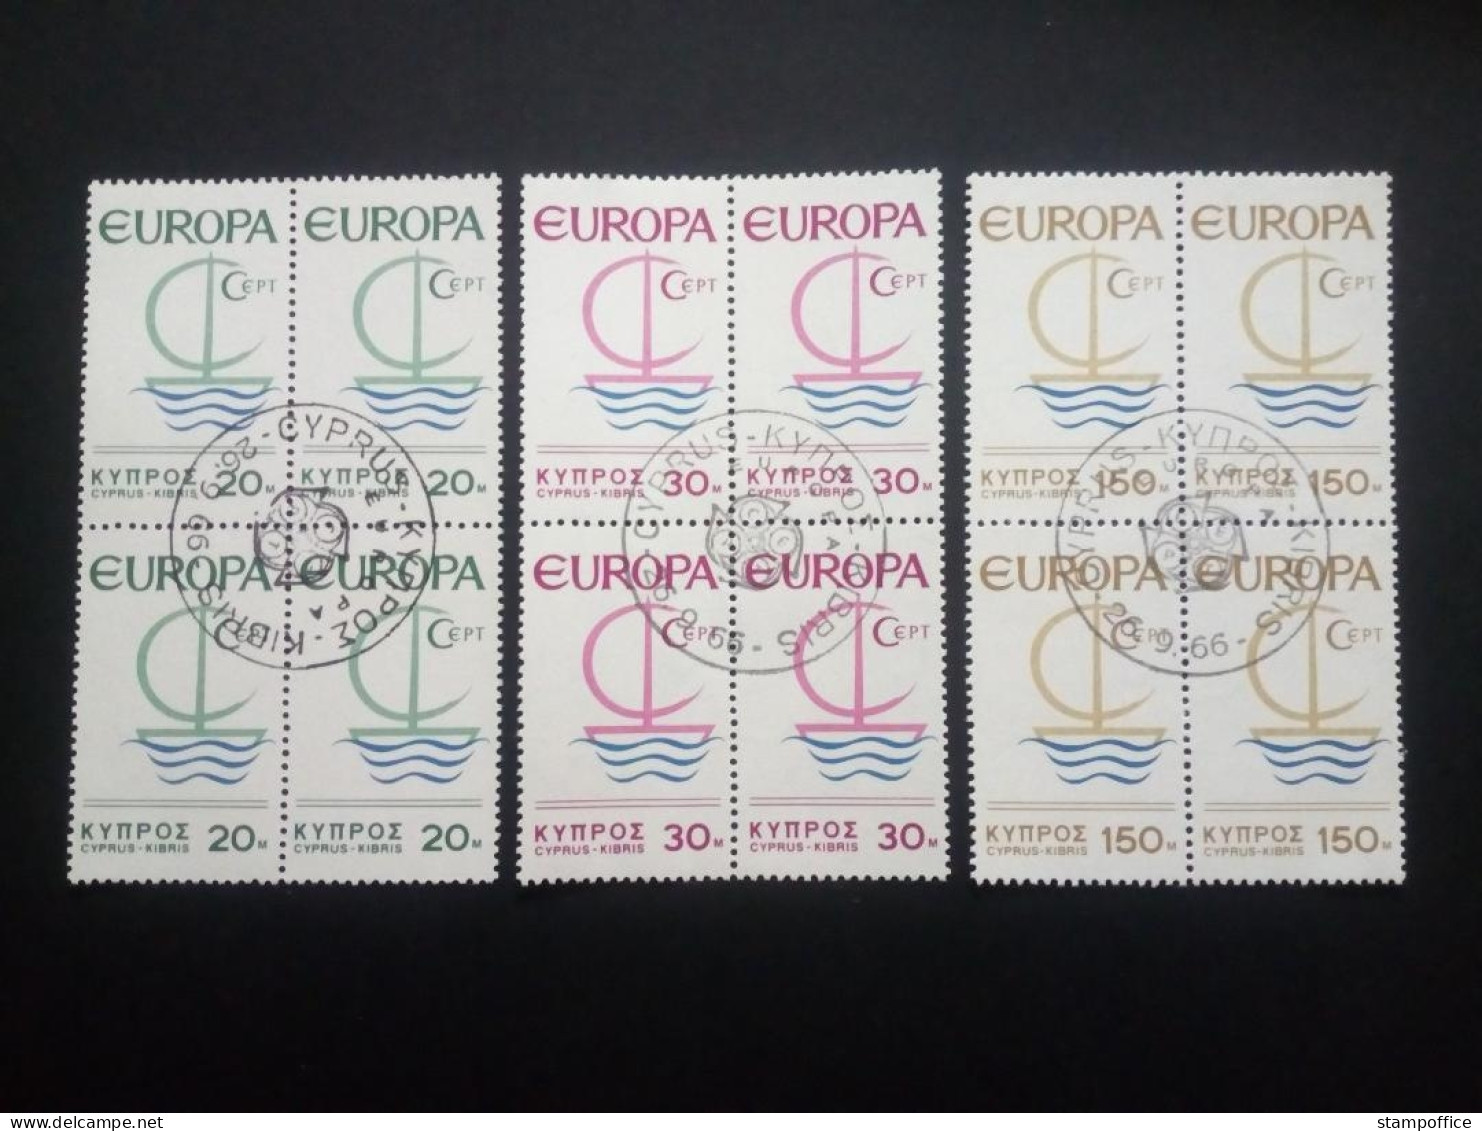 ZYPERN MI-NR. 270-272 GESTEMPELT(USED) 4er BLOCK EUROPA 1966 SEGEL - 1966